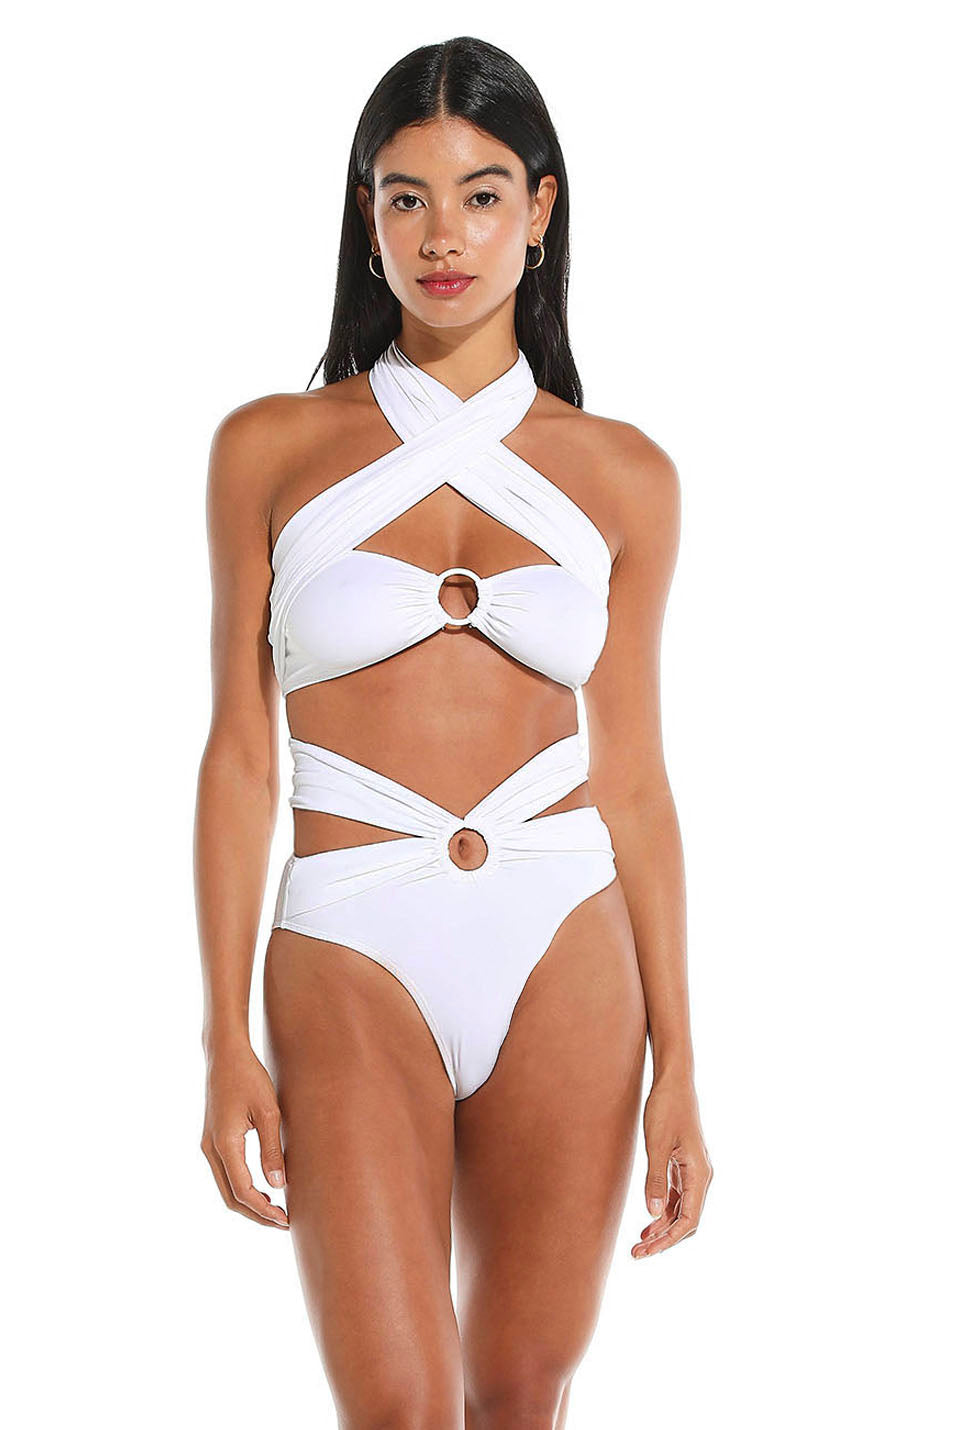 Toghzan bikini bottom - White